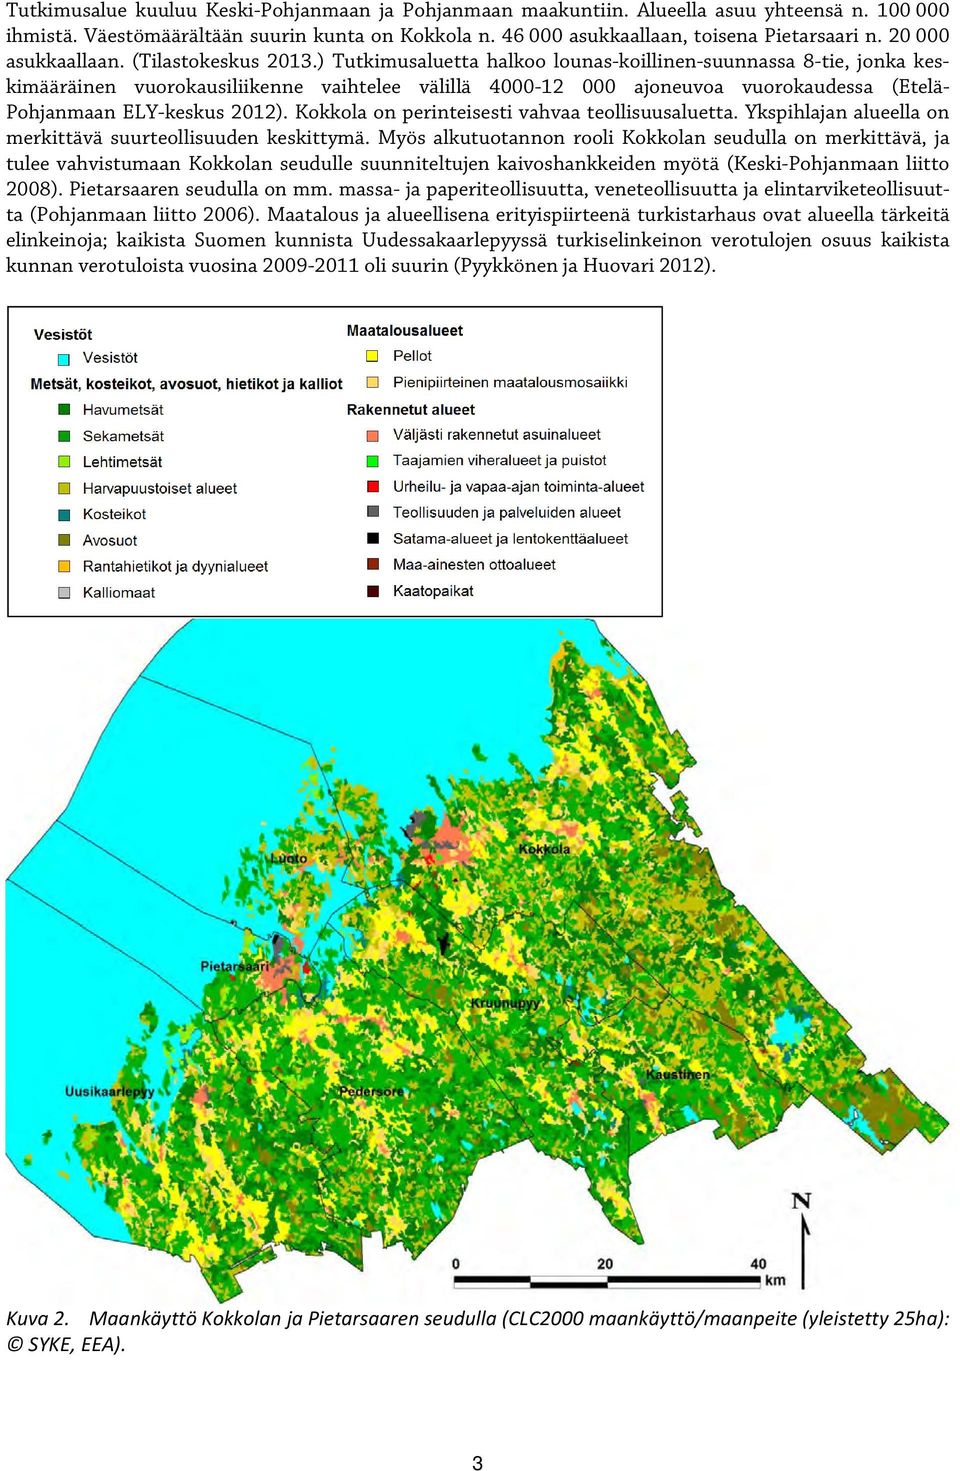 ) Tutkimusaluetta halkoo lounas-koillinen-suunnassa 8-tie, jonka keskimääräinen vuorokausiliikenne vaihtelee välillä 4000-12 000 ajoneuvoa vuorokaudessa (Etelä- Pohjanmaan ELY-keskus 2012).